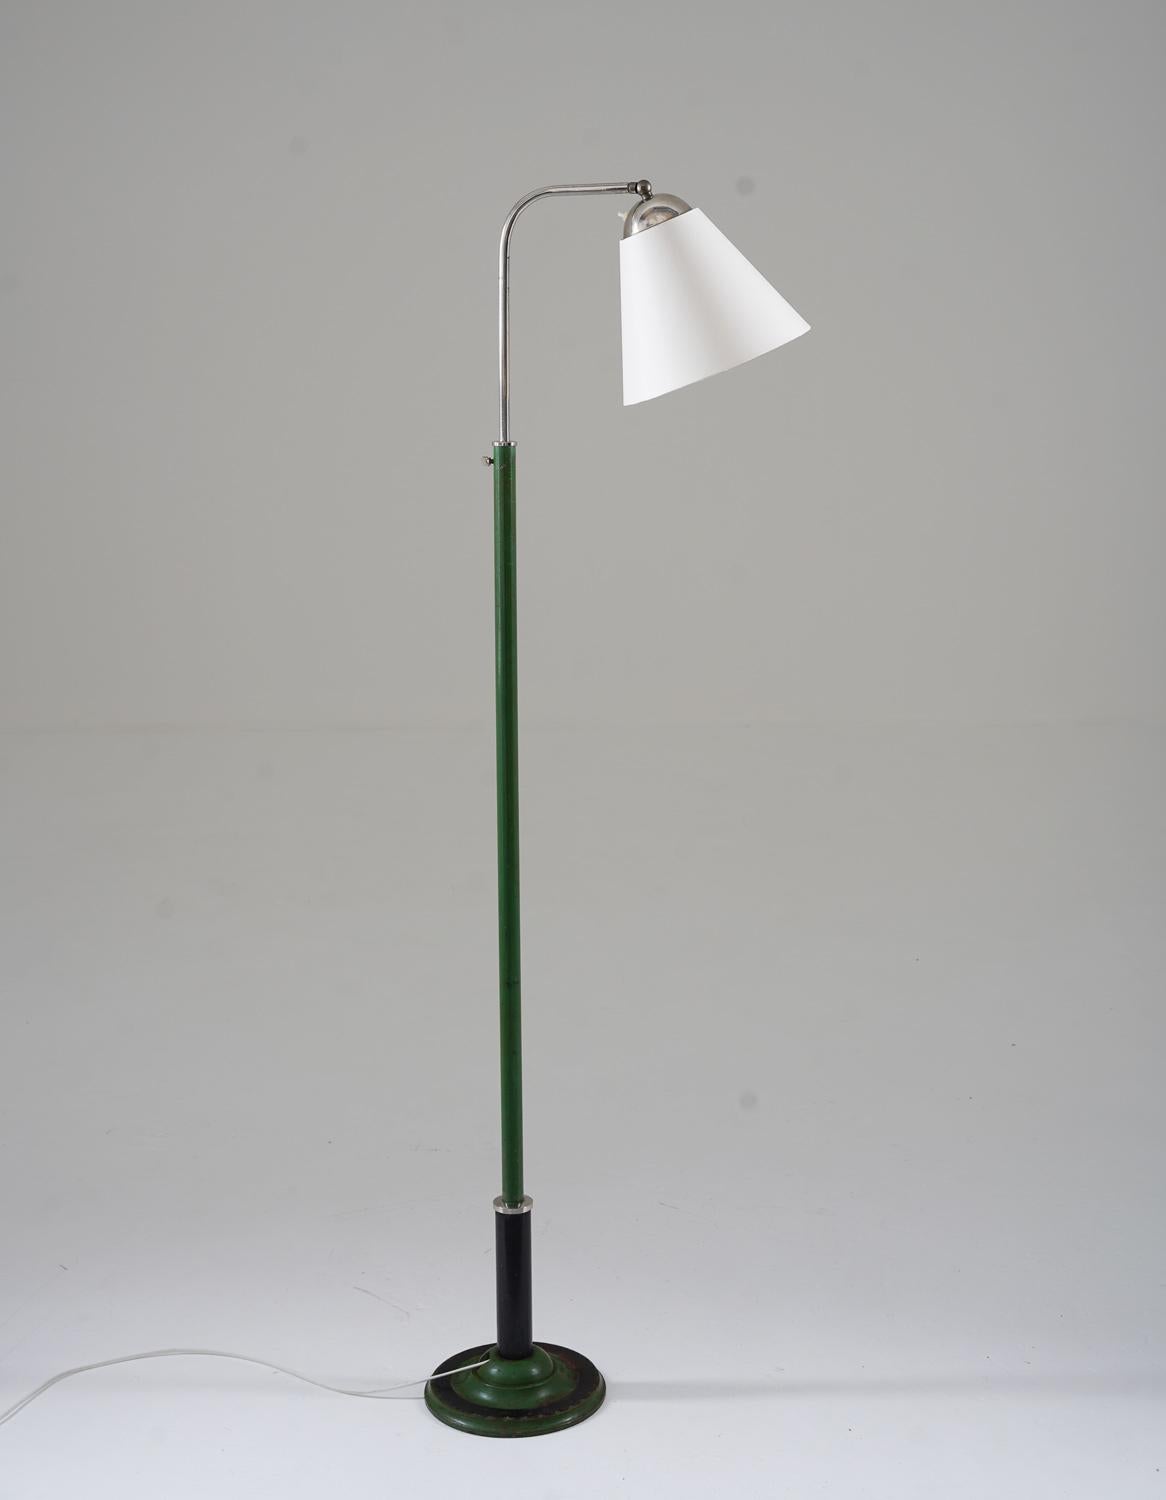 132-180
Schöne frühe funktionalistische Stehlampe, hergestellt in Schweden, 1930er Jahre. 
Die Lampe besteht aus einem grün-schwarzen Eisenfuß, der einen verchromten Schwenkarm trägt, der den Schirm hält. 
Die Höhe ist zwischen 132-180cm (60-70.8